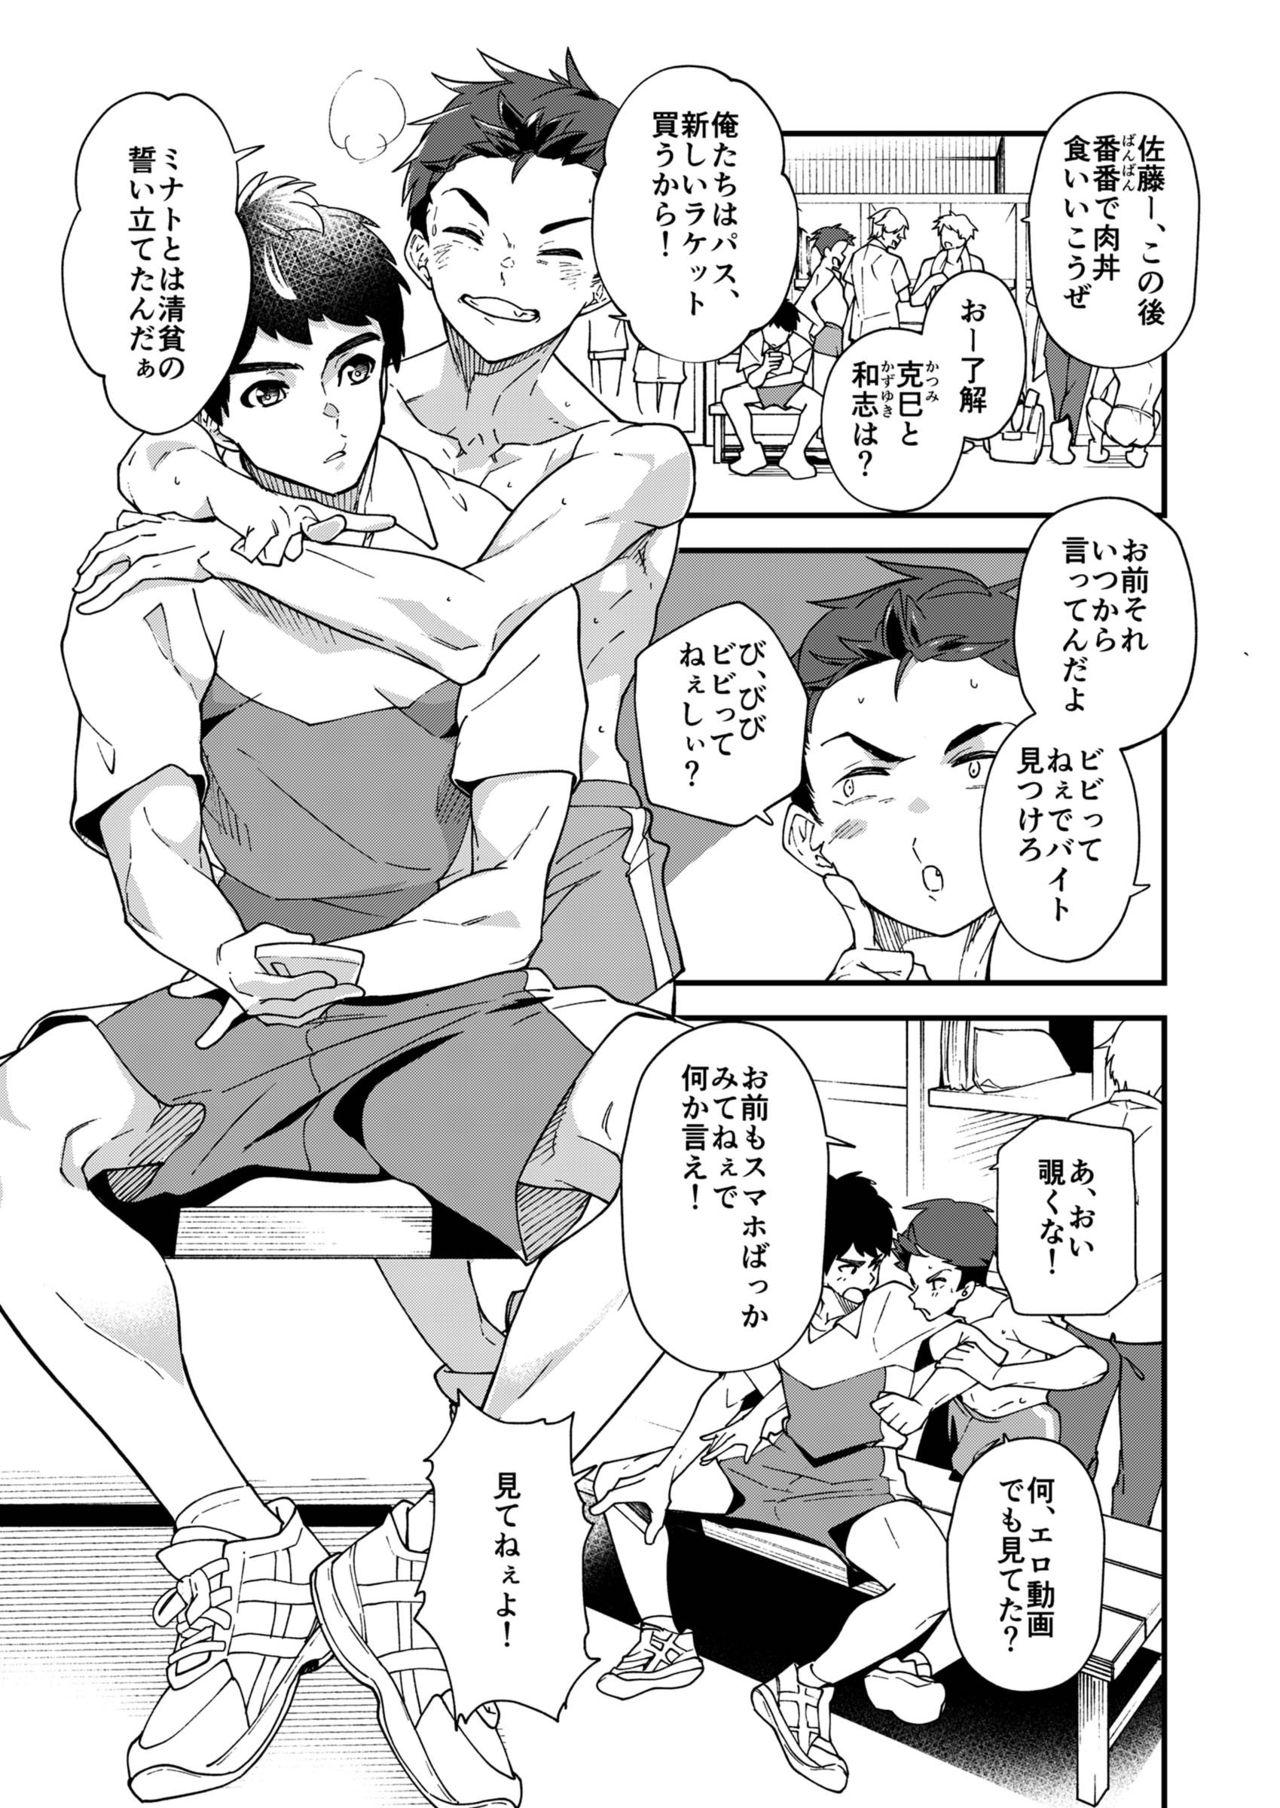 Car Kore sōnyū rete shasei shitara 5 man tte majina n su yo ne!? - Original Picked Up - Page 4